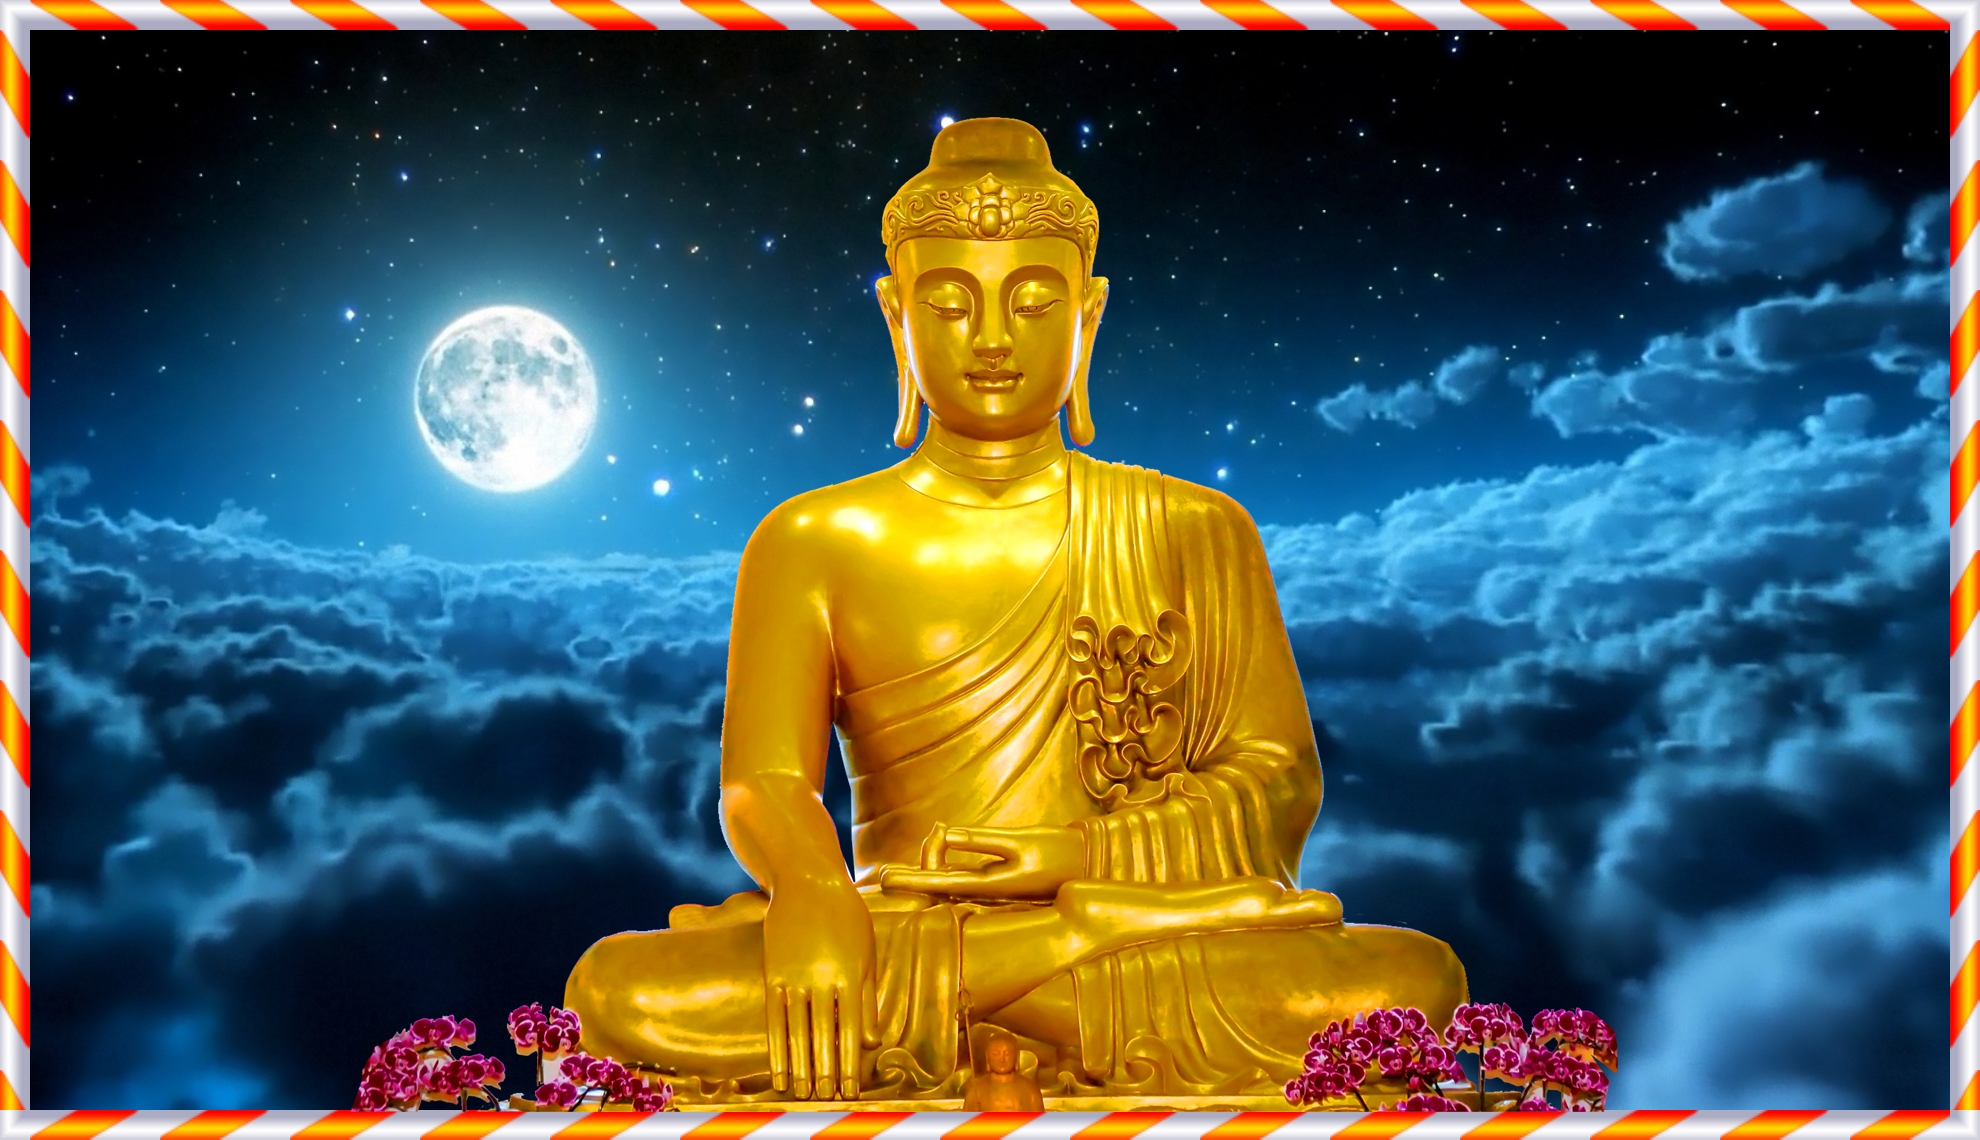 Hình Phật Thích Ca đẹp như một tuyệt tác nghệ thuật, đem lại cảm giác yên bình và thanh thản. Bức ảnh thể hiện vẻ đẹp tuyệt đỉnh của một đấng Phật hiện diện trước chúng ta. Hãy cảm nhận tấm lòng đầy trắc ẩn của Phật Thích Ca và tìm kiếm cảm hứng và sự yên bình từ những bức ảnh này.